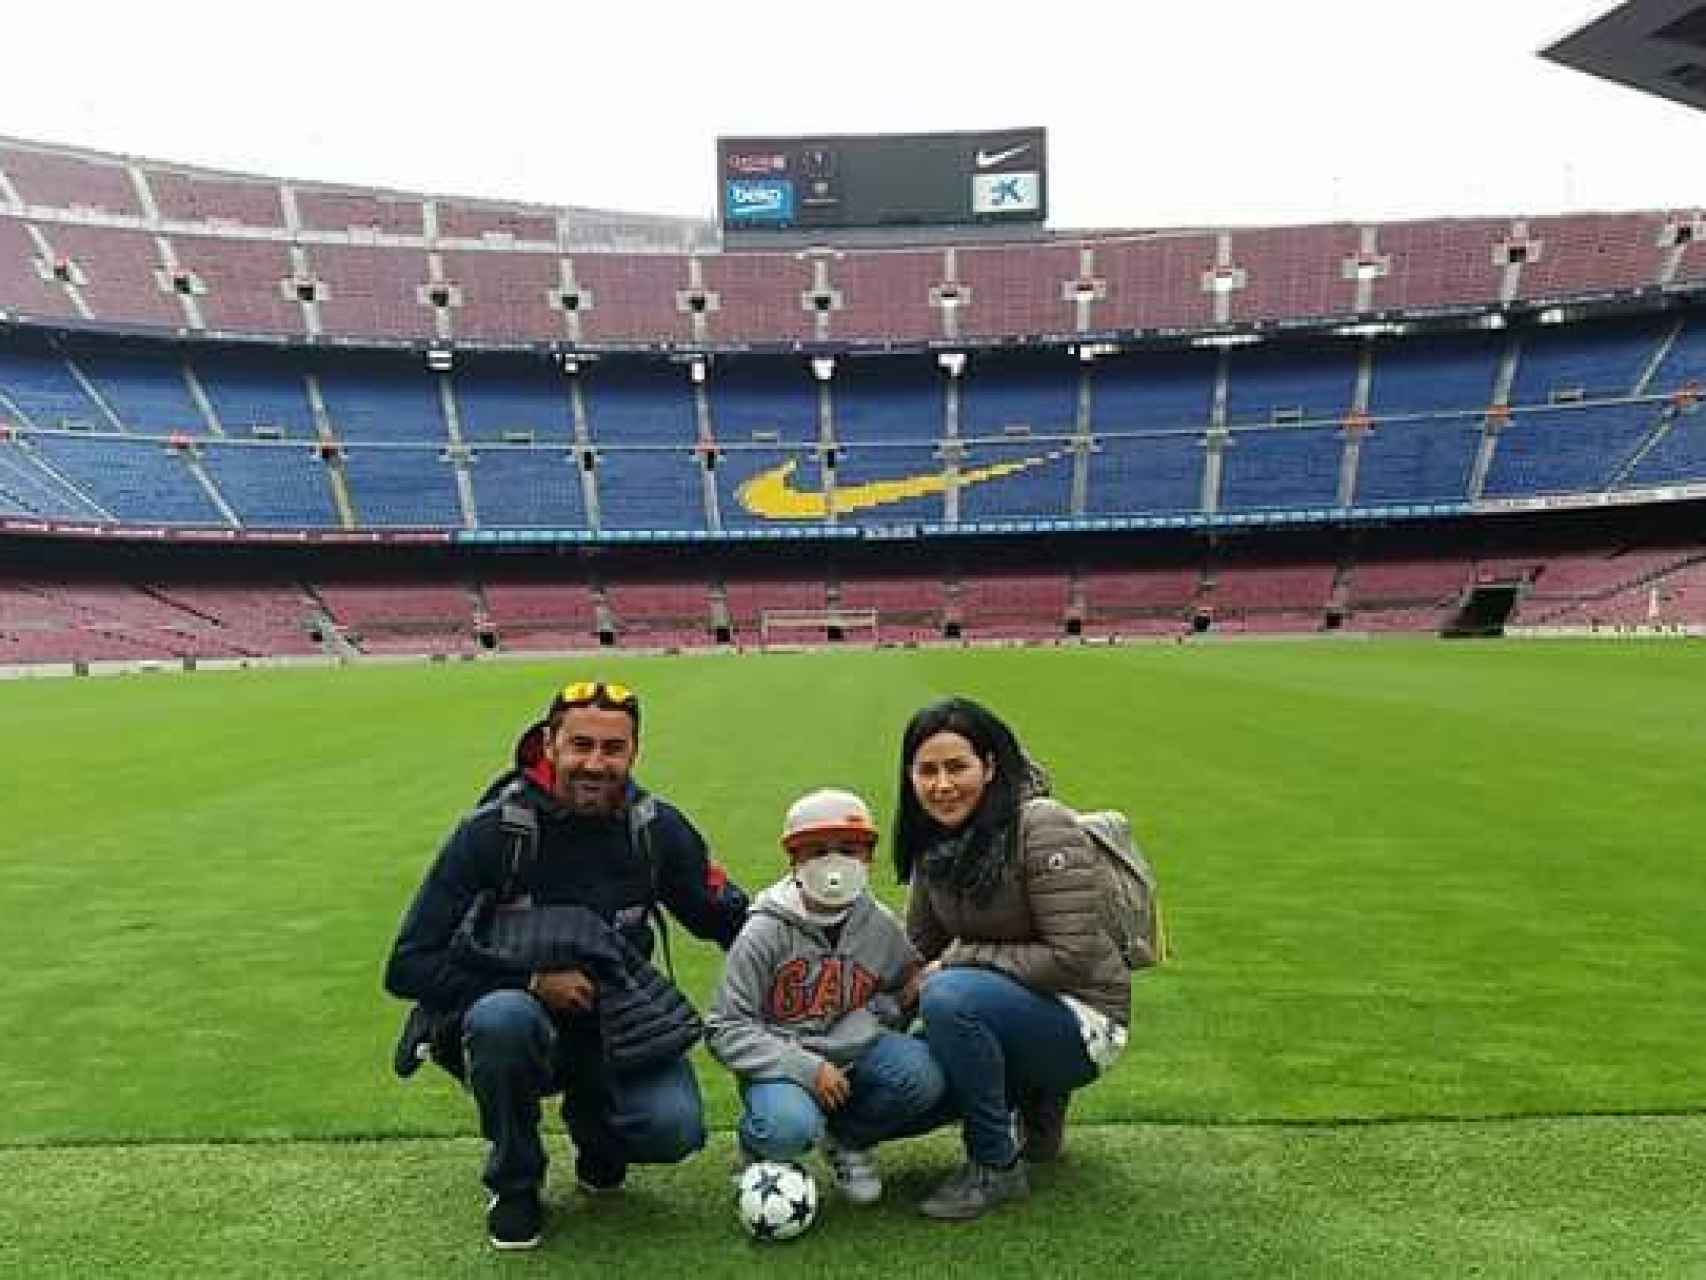 El pasado sábado Joan estuvo de visita en el Camp Nou. Ya conocía la buena noticia de que le habían encontrado un donante.